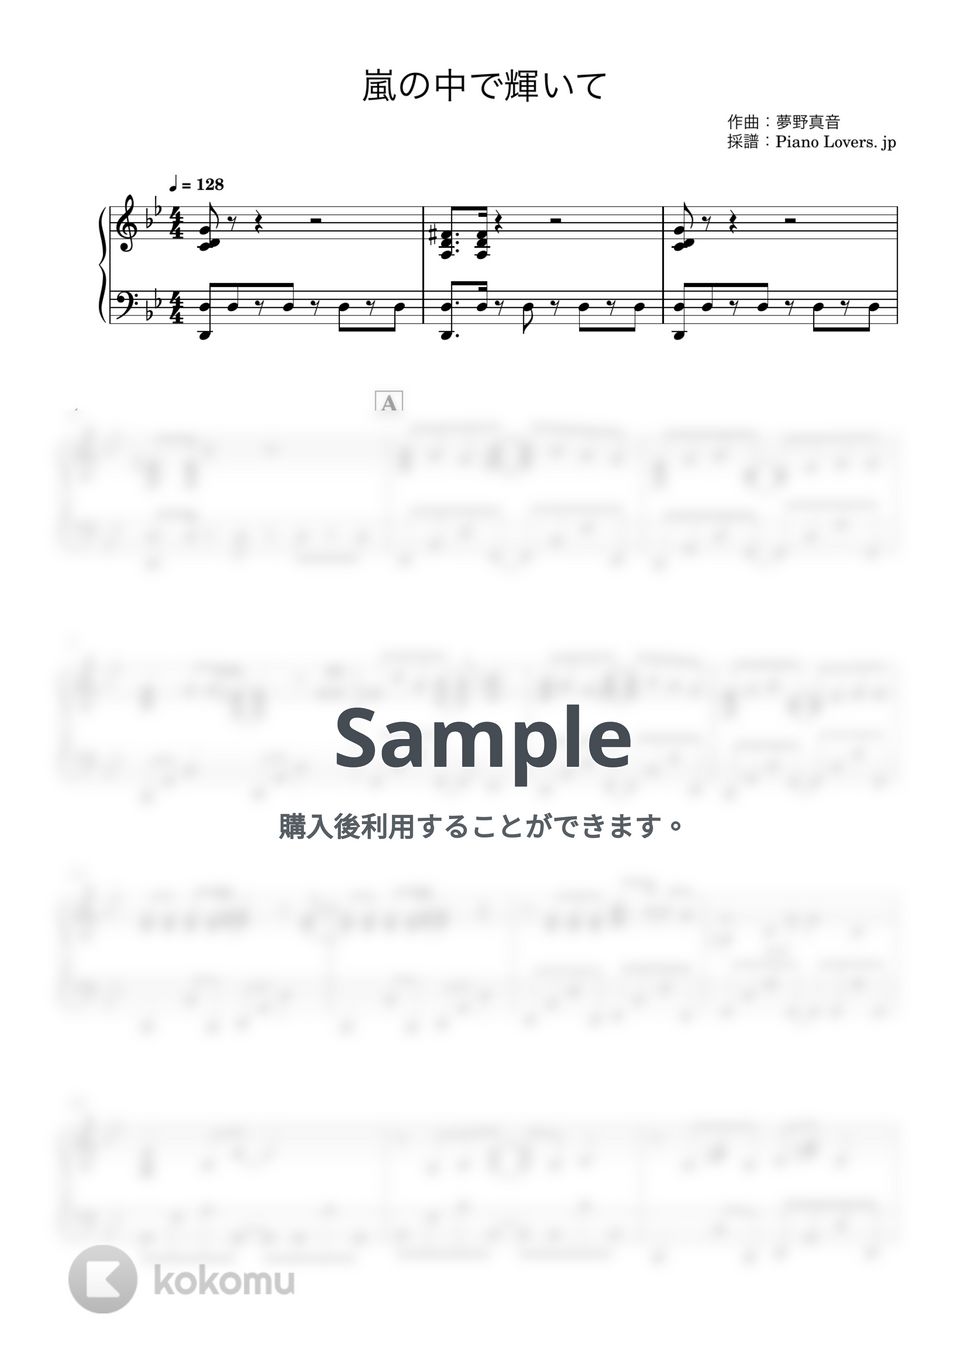 米倉千尋 - 嵐の中で輝いて (機動戦士ガンダム) by Piano Lovers. jp